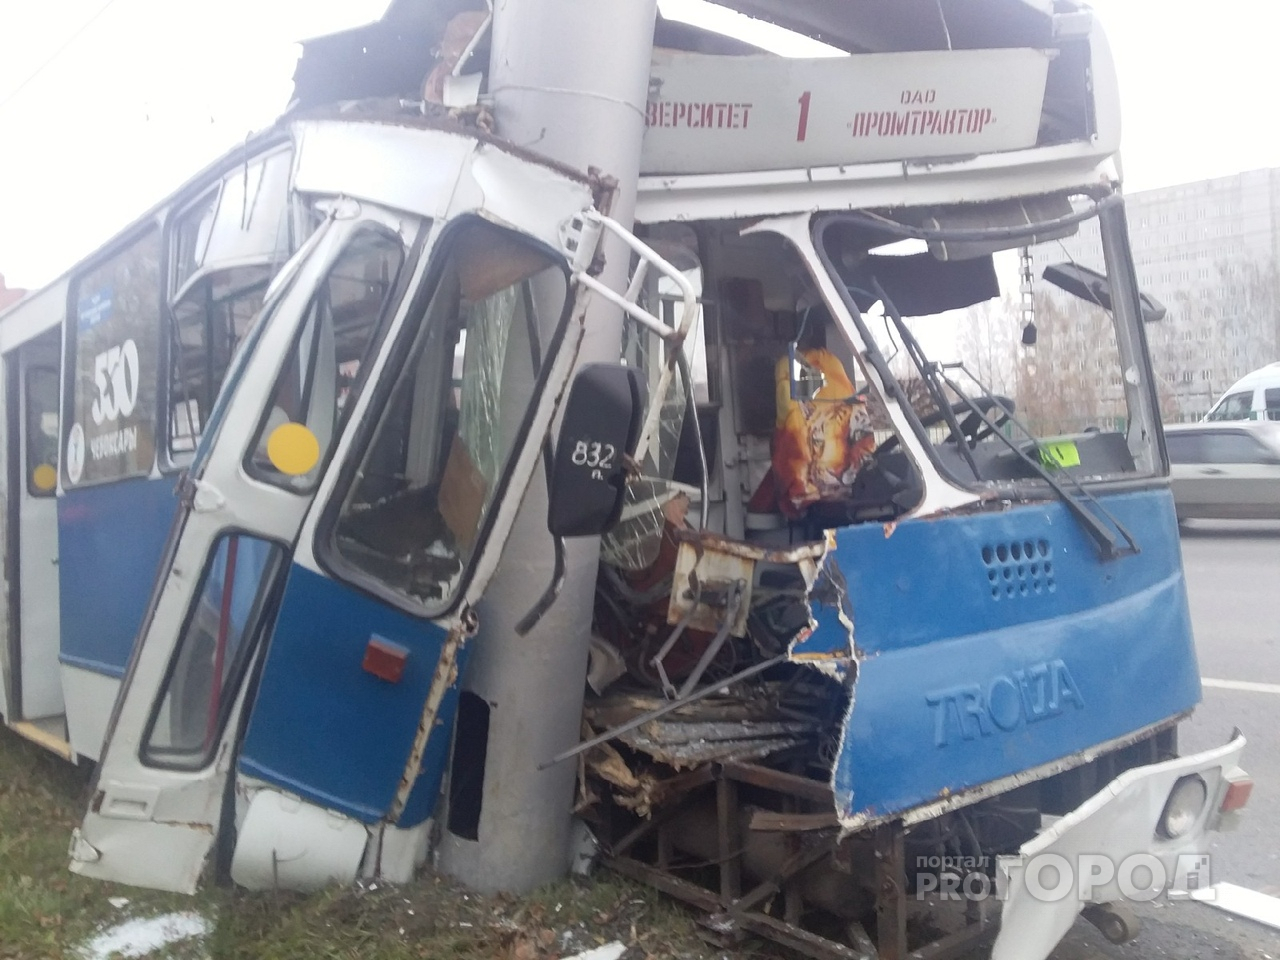 Ногу свело: причина серьезного ДТП с троллейбусом в Чебоксарах